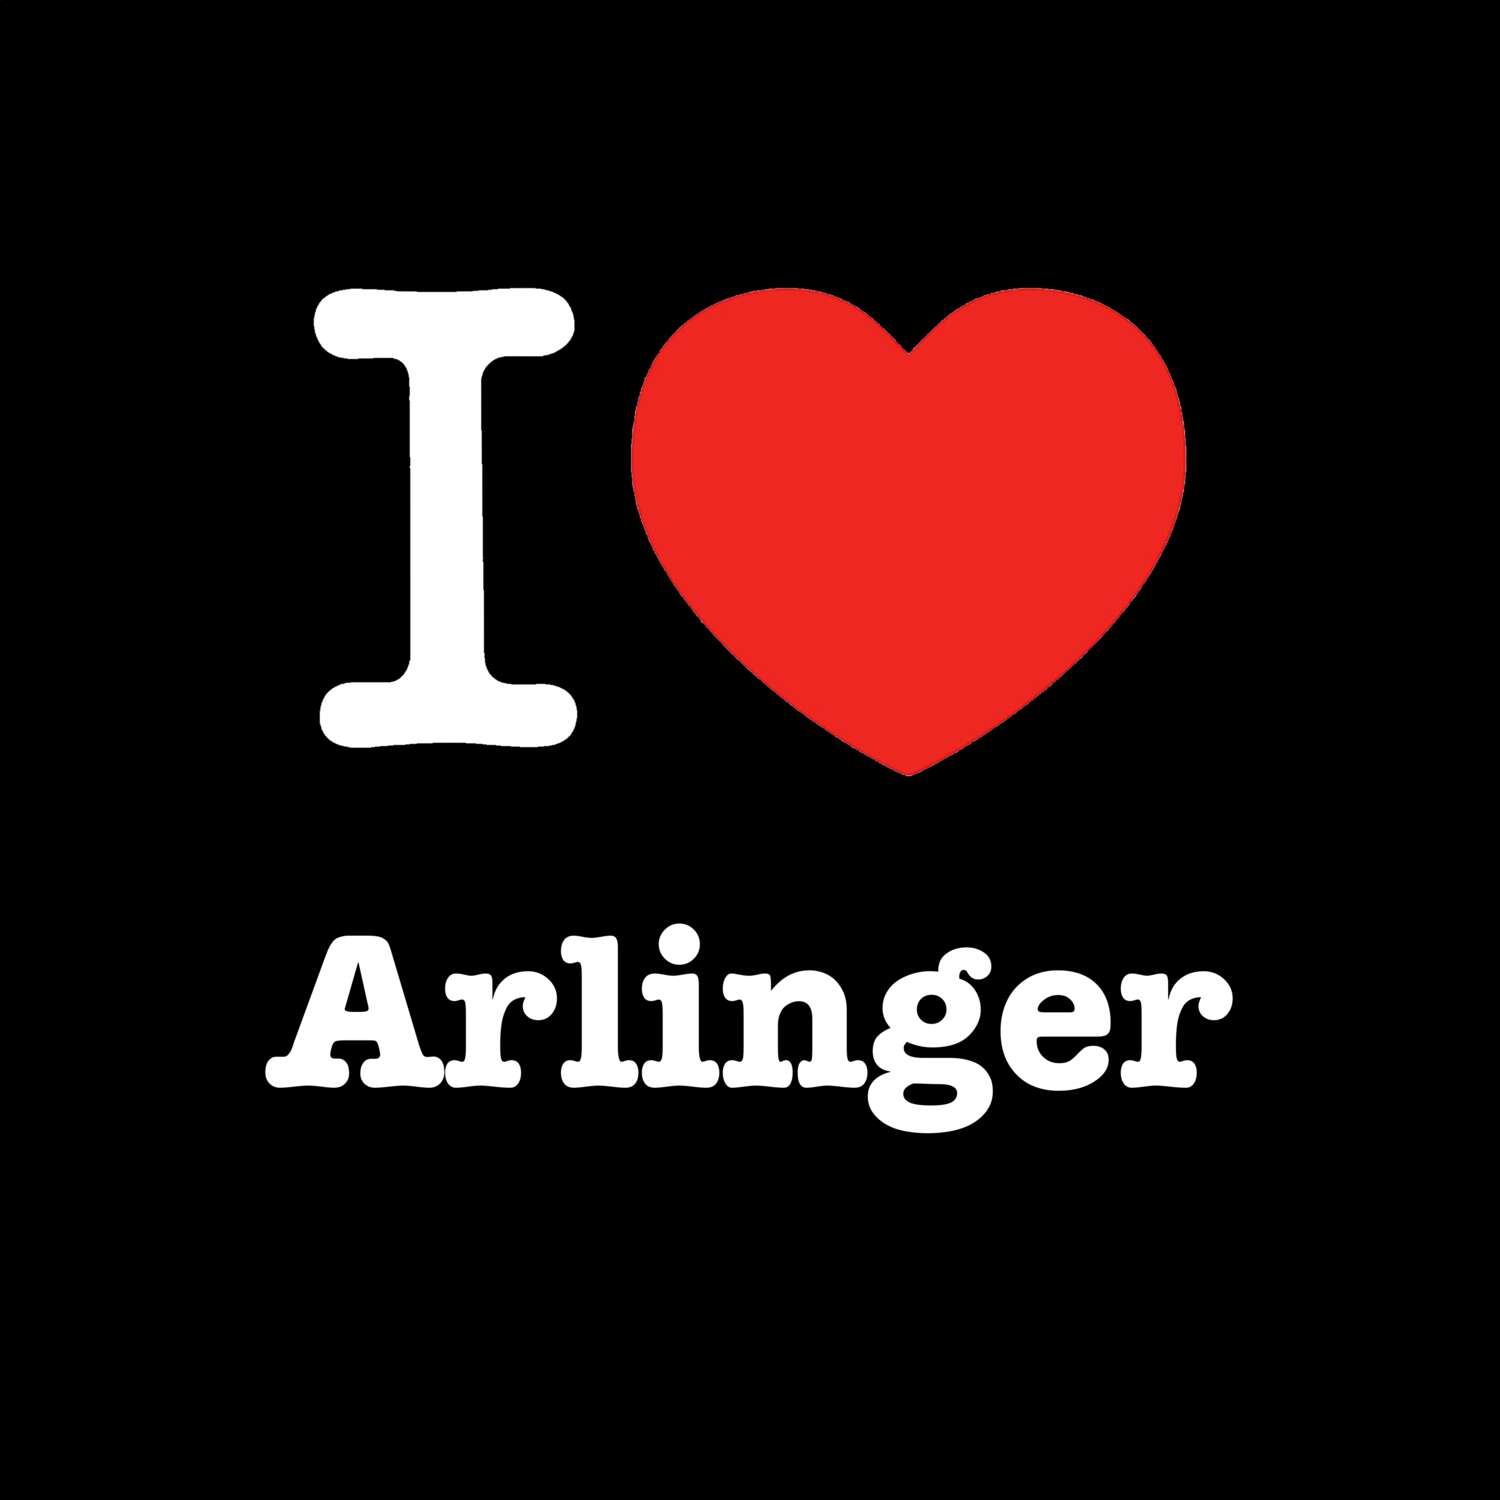 Arlinger T-Shirt »I love«